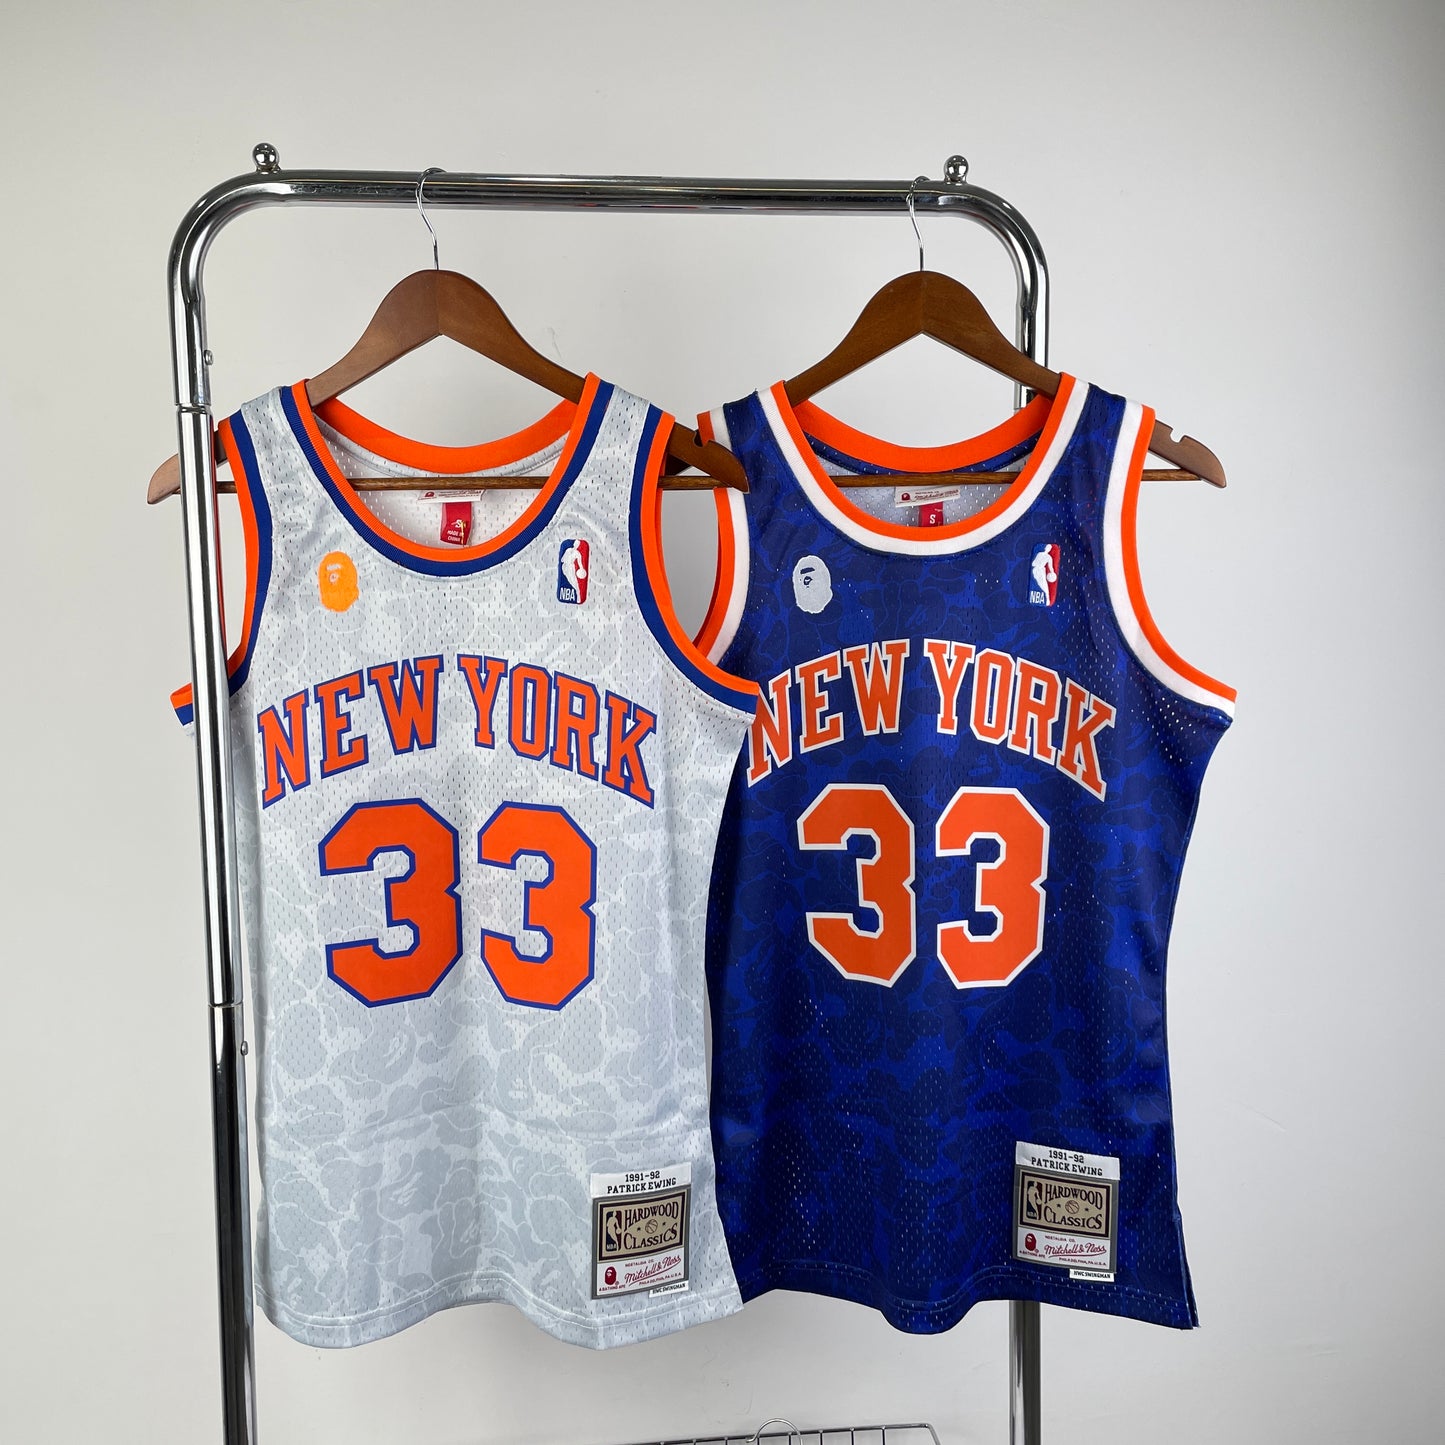 ‘A Bathing Ape’ X Patrick Ewing New York Knicks Mitchell & Ness NBA Hardwood Classic Jersey